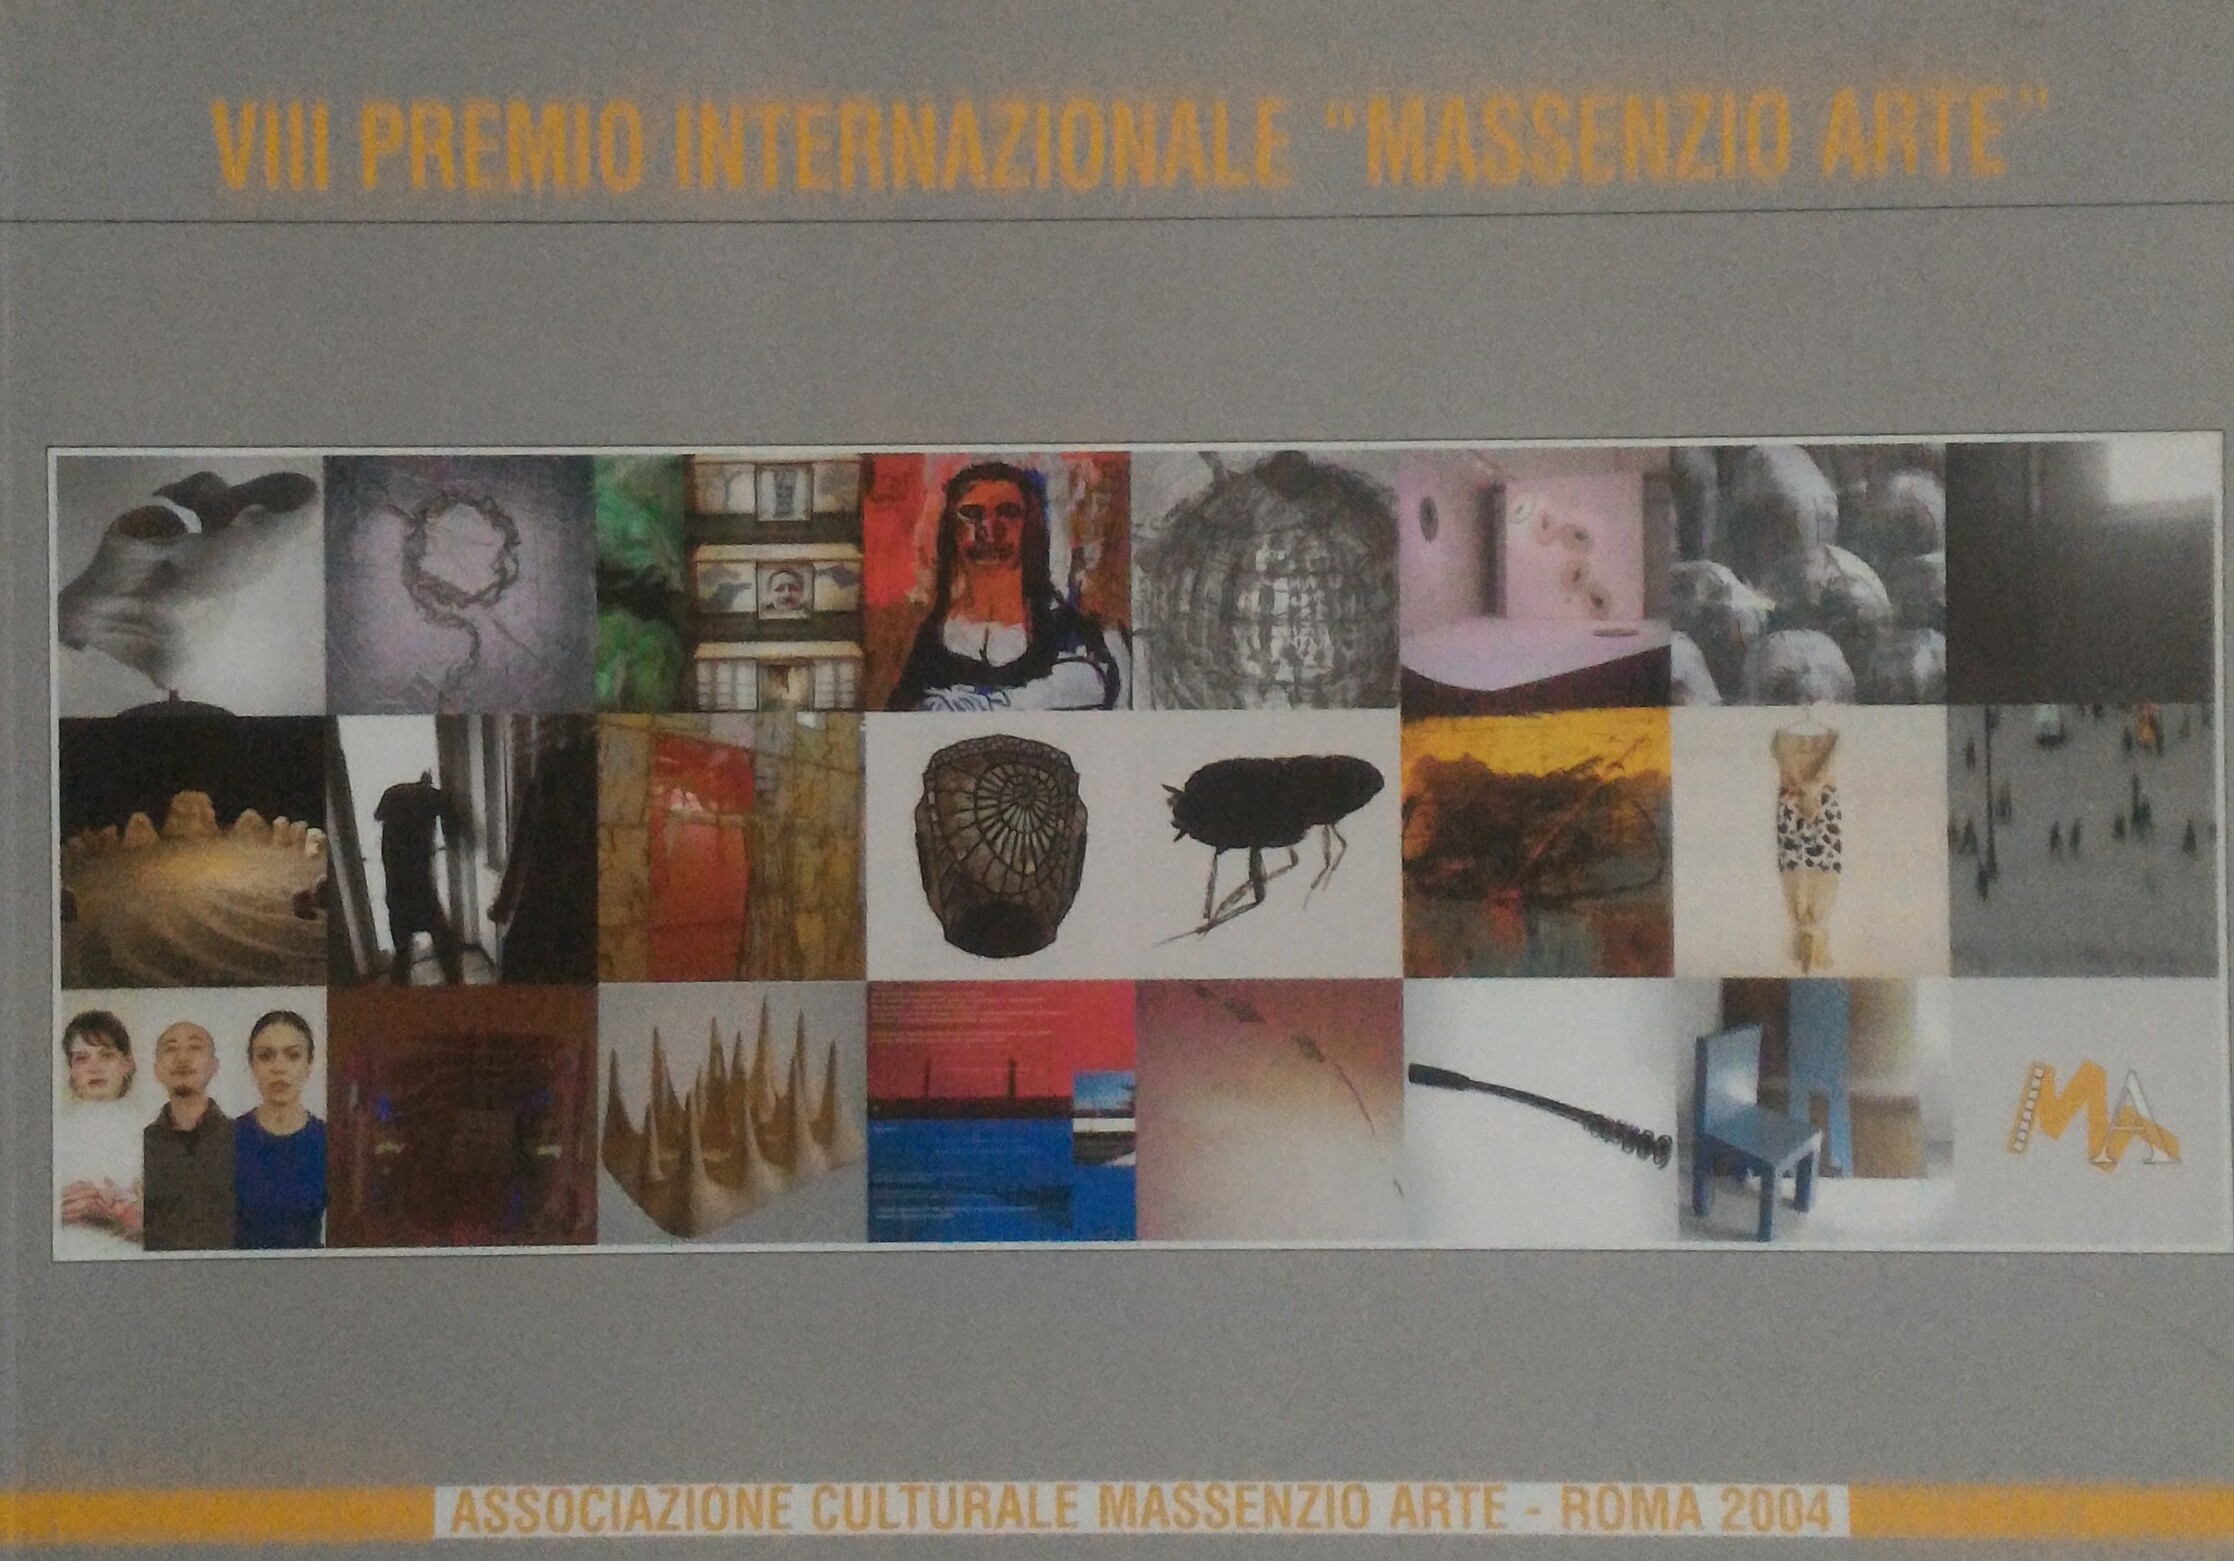 Mostra dell'VIII Premio Internazionale Massenzio Arte